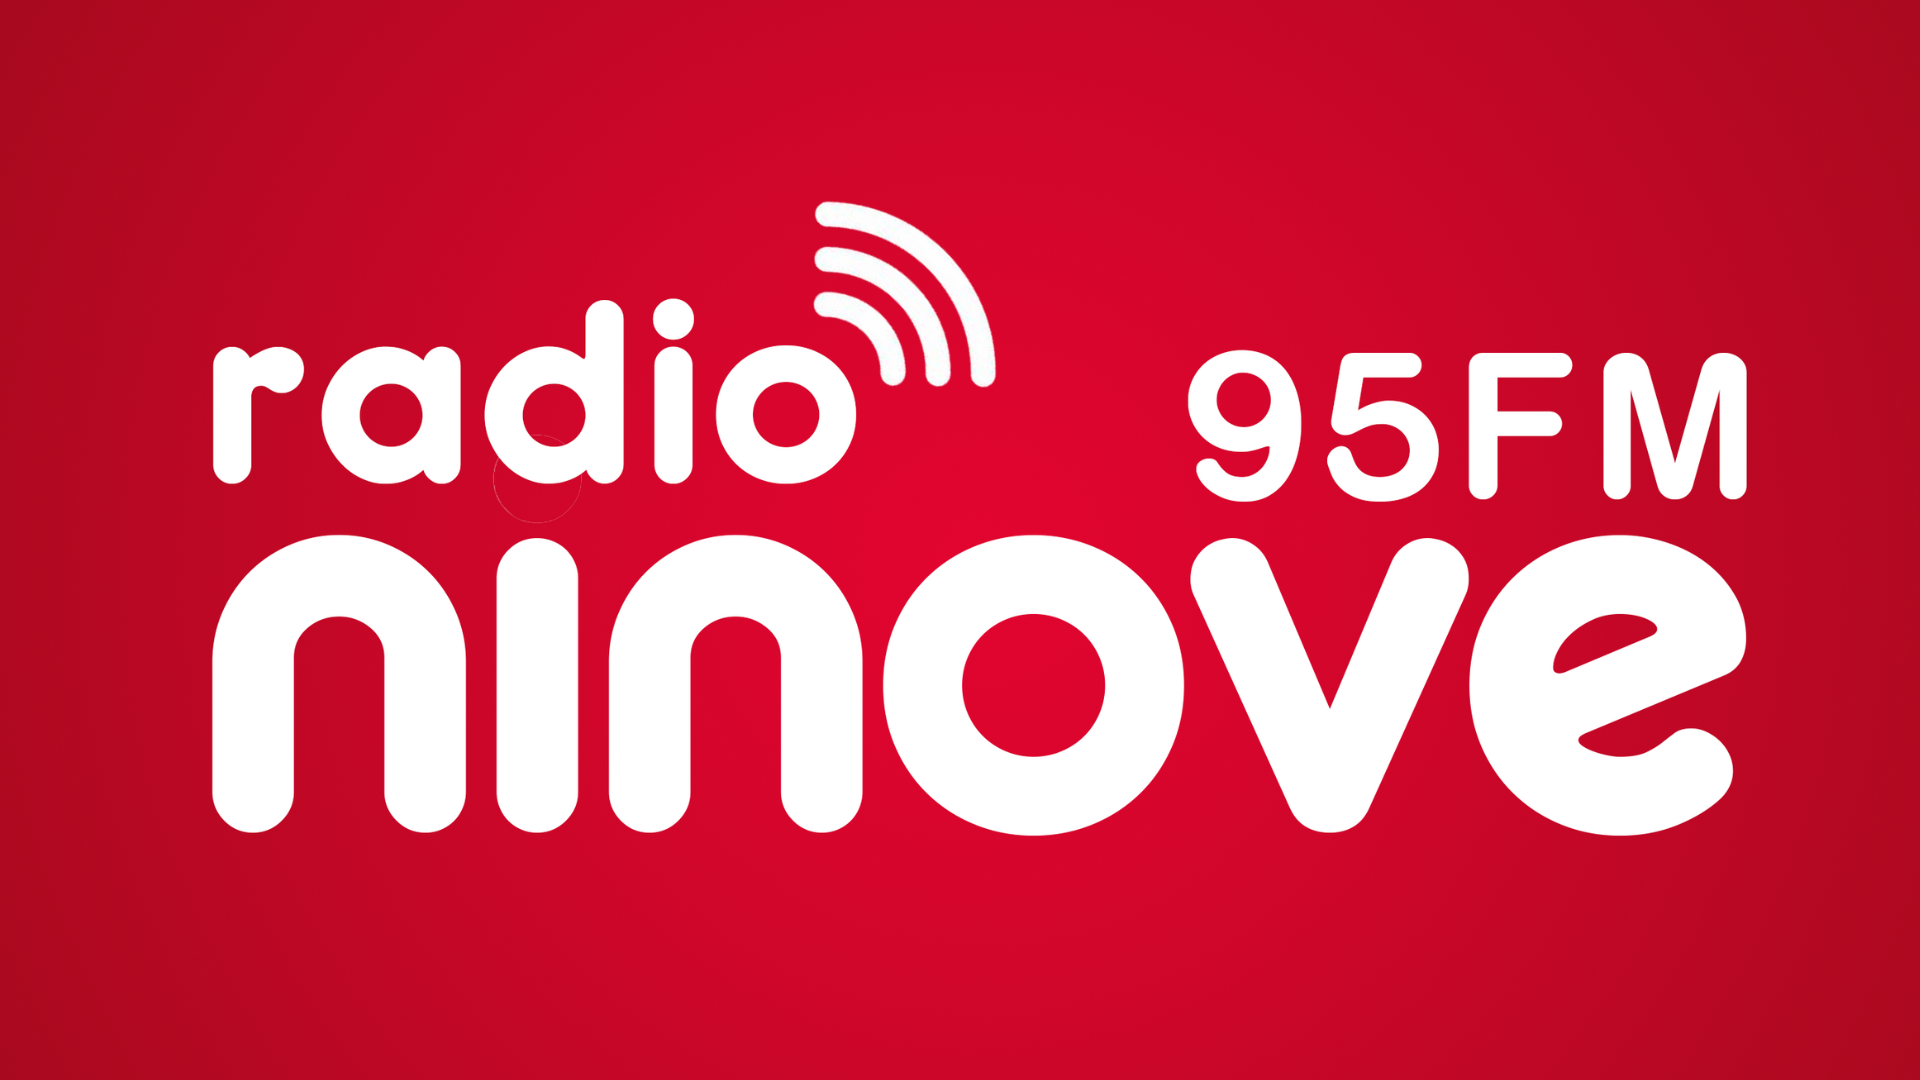 Radio Ninove 